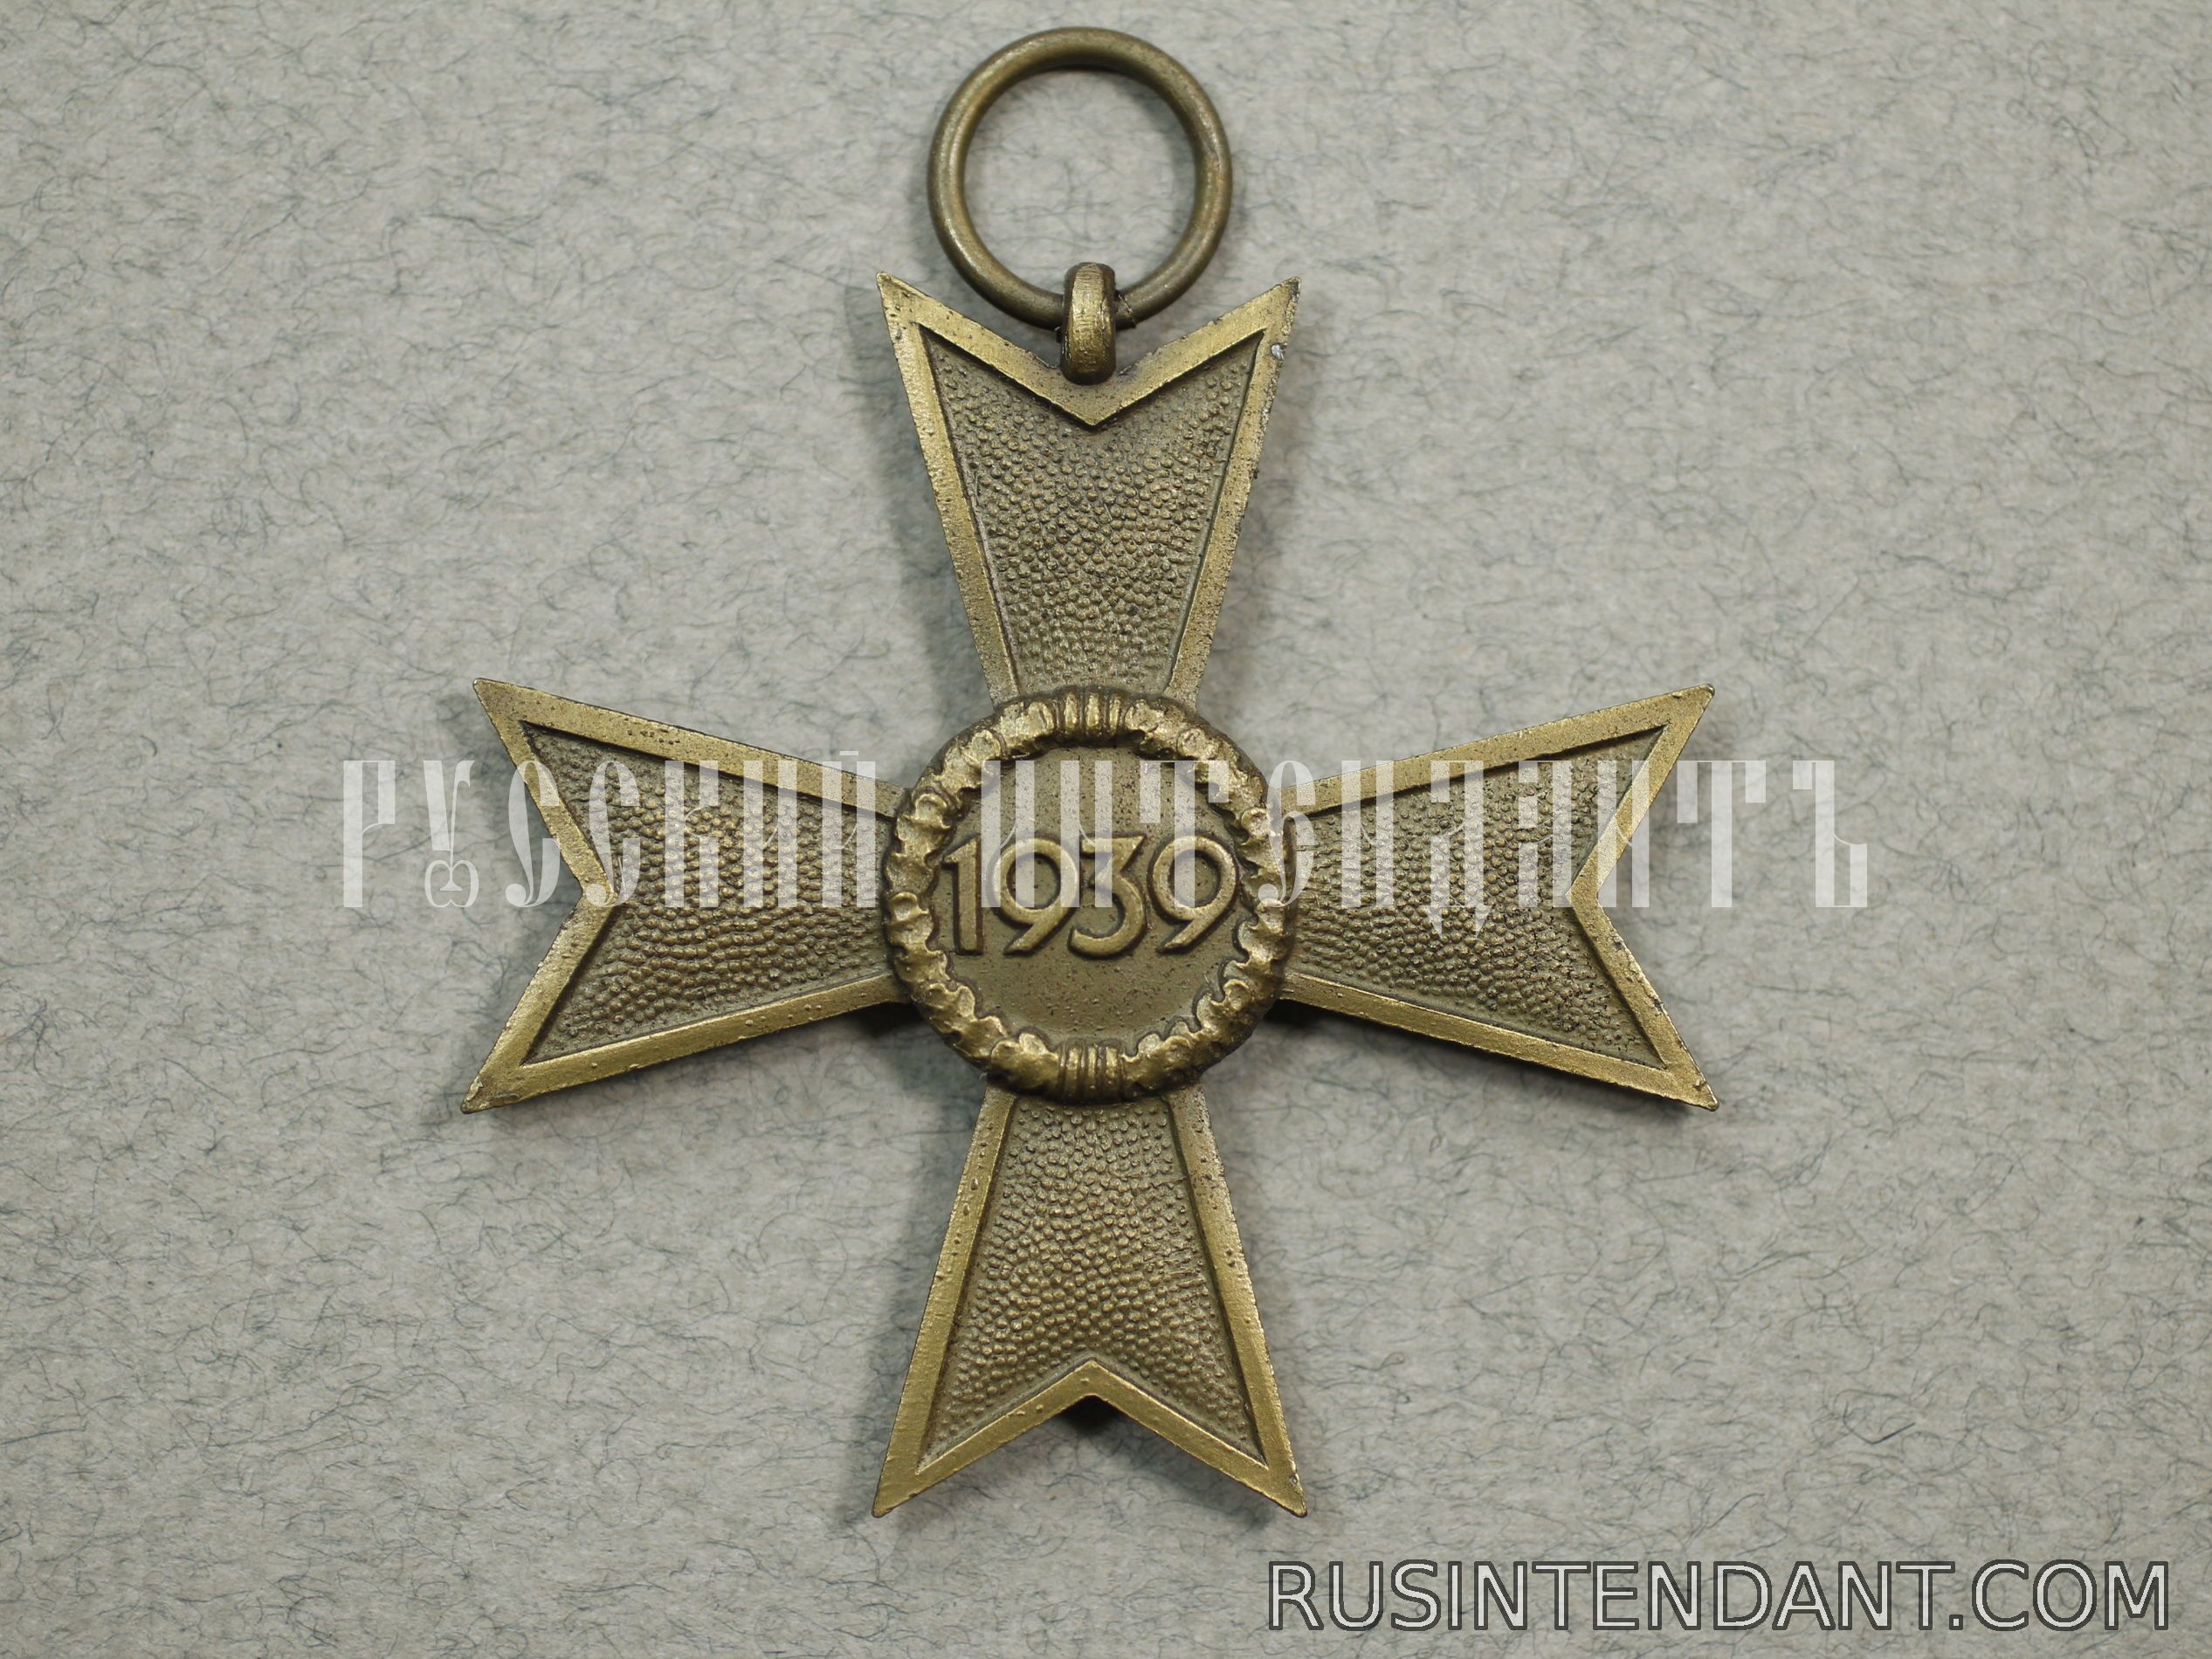 Фото 7: Крест Военных заслуг второго класса без мечей с наградным листом 